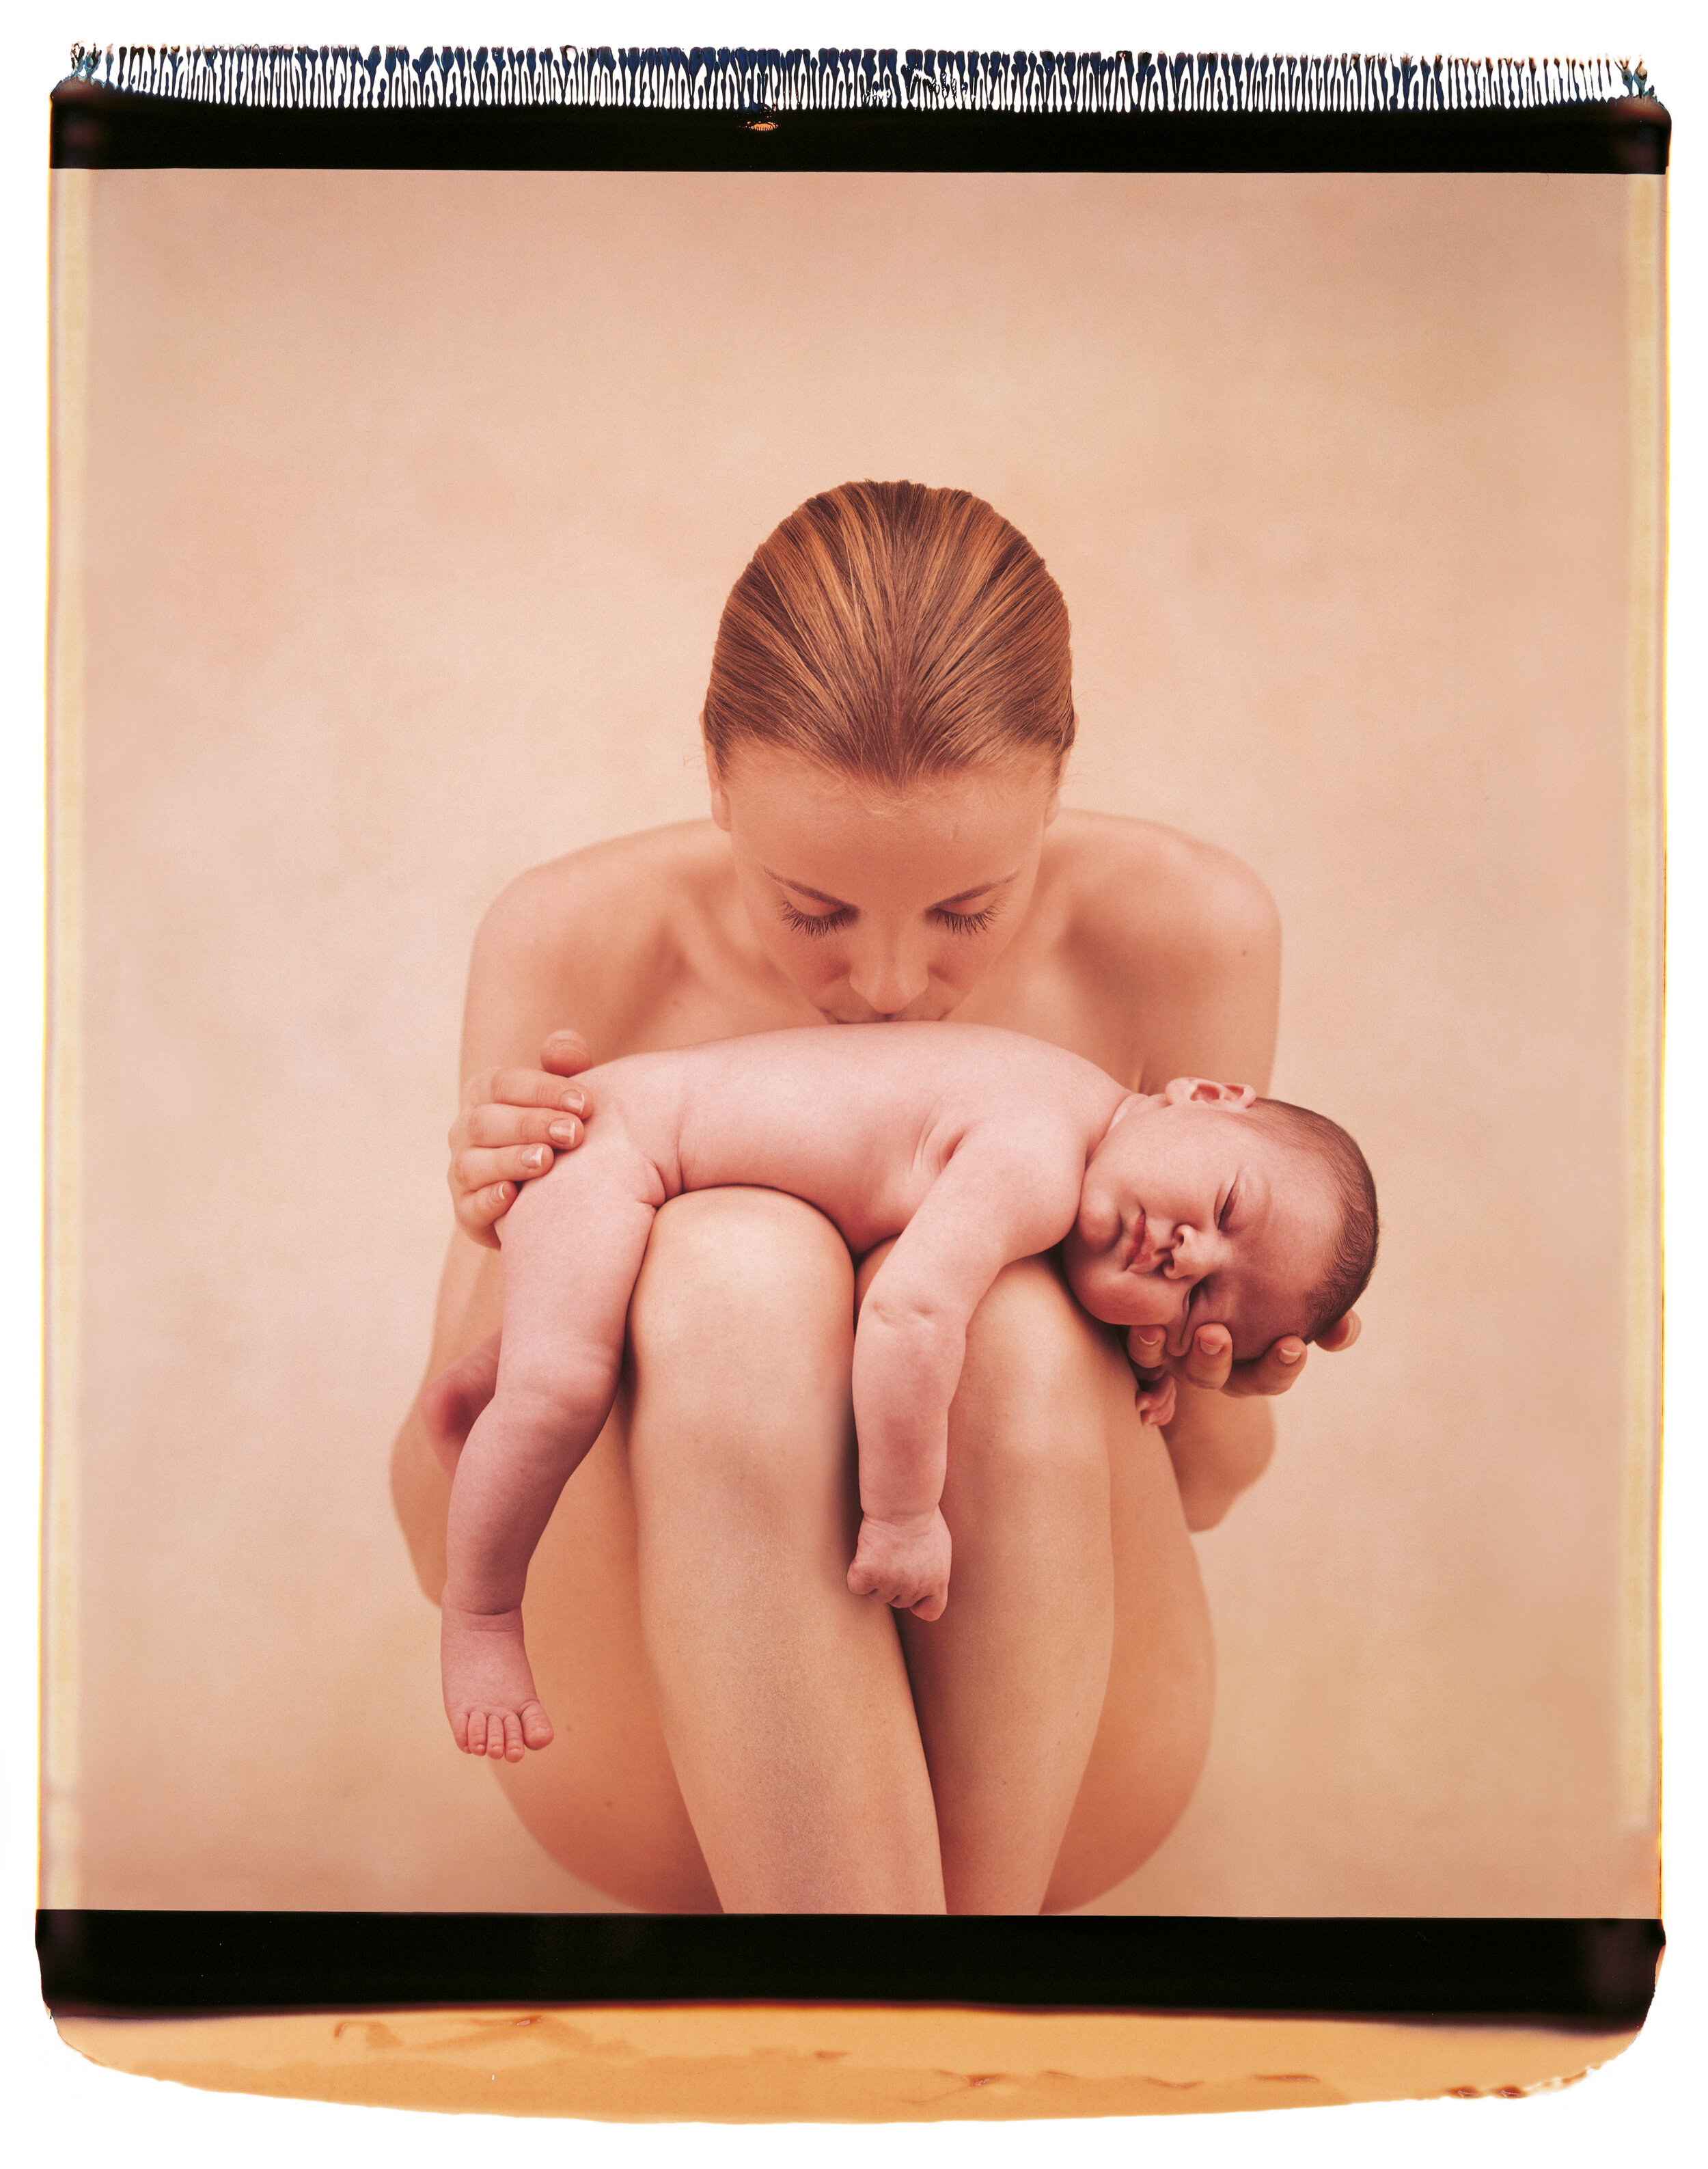 Мама показывает свое гол. Женщина с младенцем. Фотосессия мама и малыш. Нагие дети с родителями.